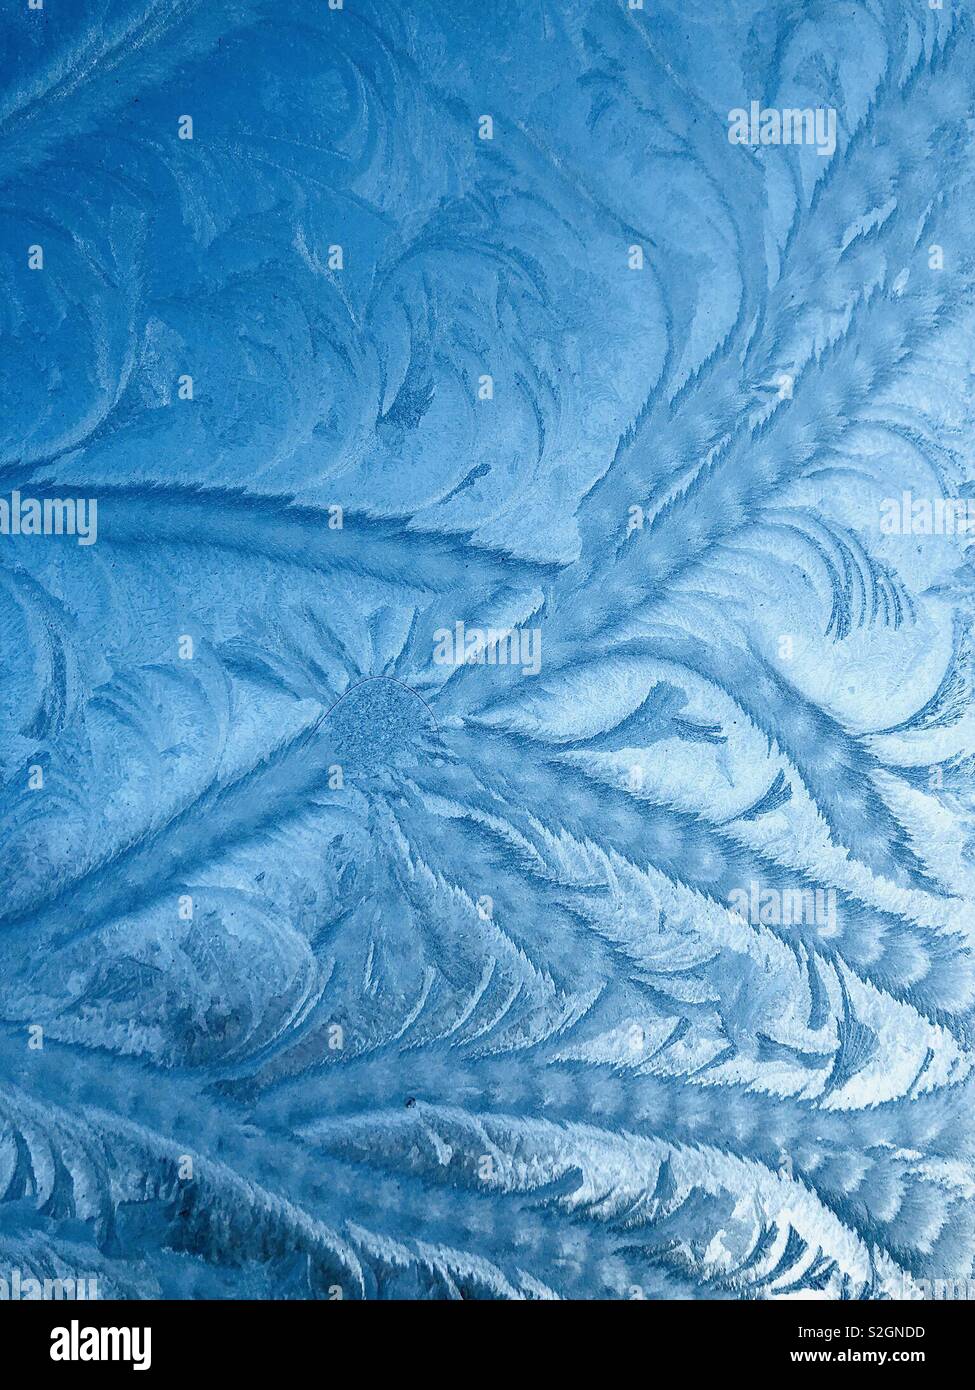 Frosty patterns on glass Stock Photo